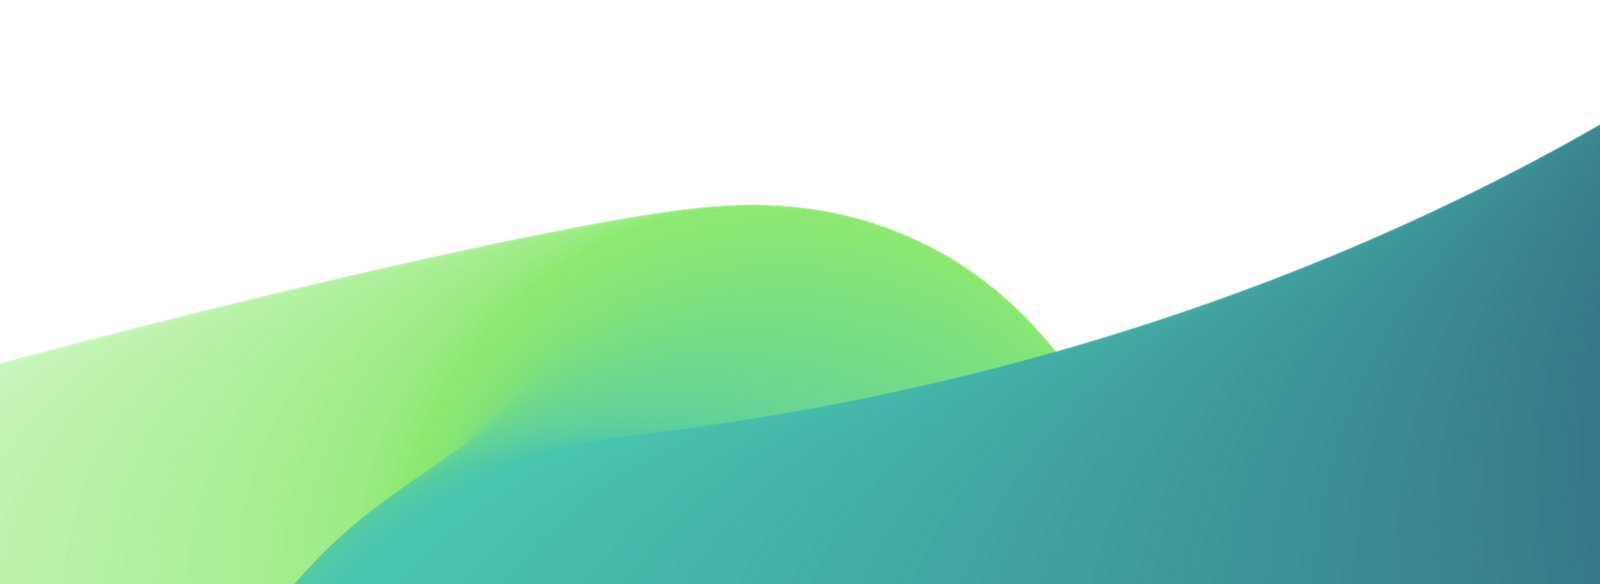 Abstrakter Hintergrund mit glatten wellenförmigen Formen in Grün- und Blauschattierungen.